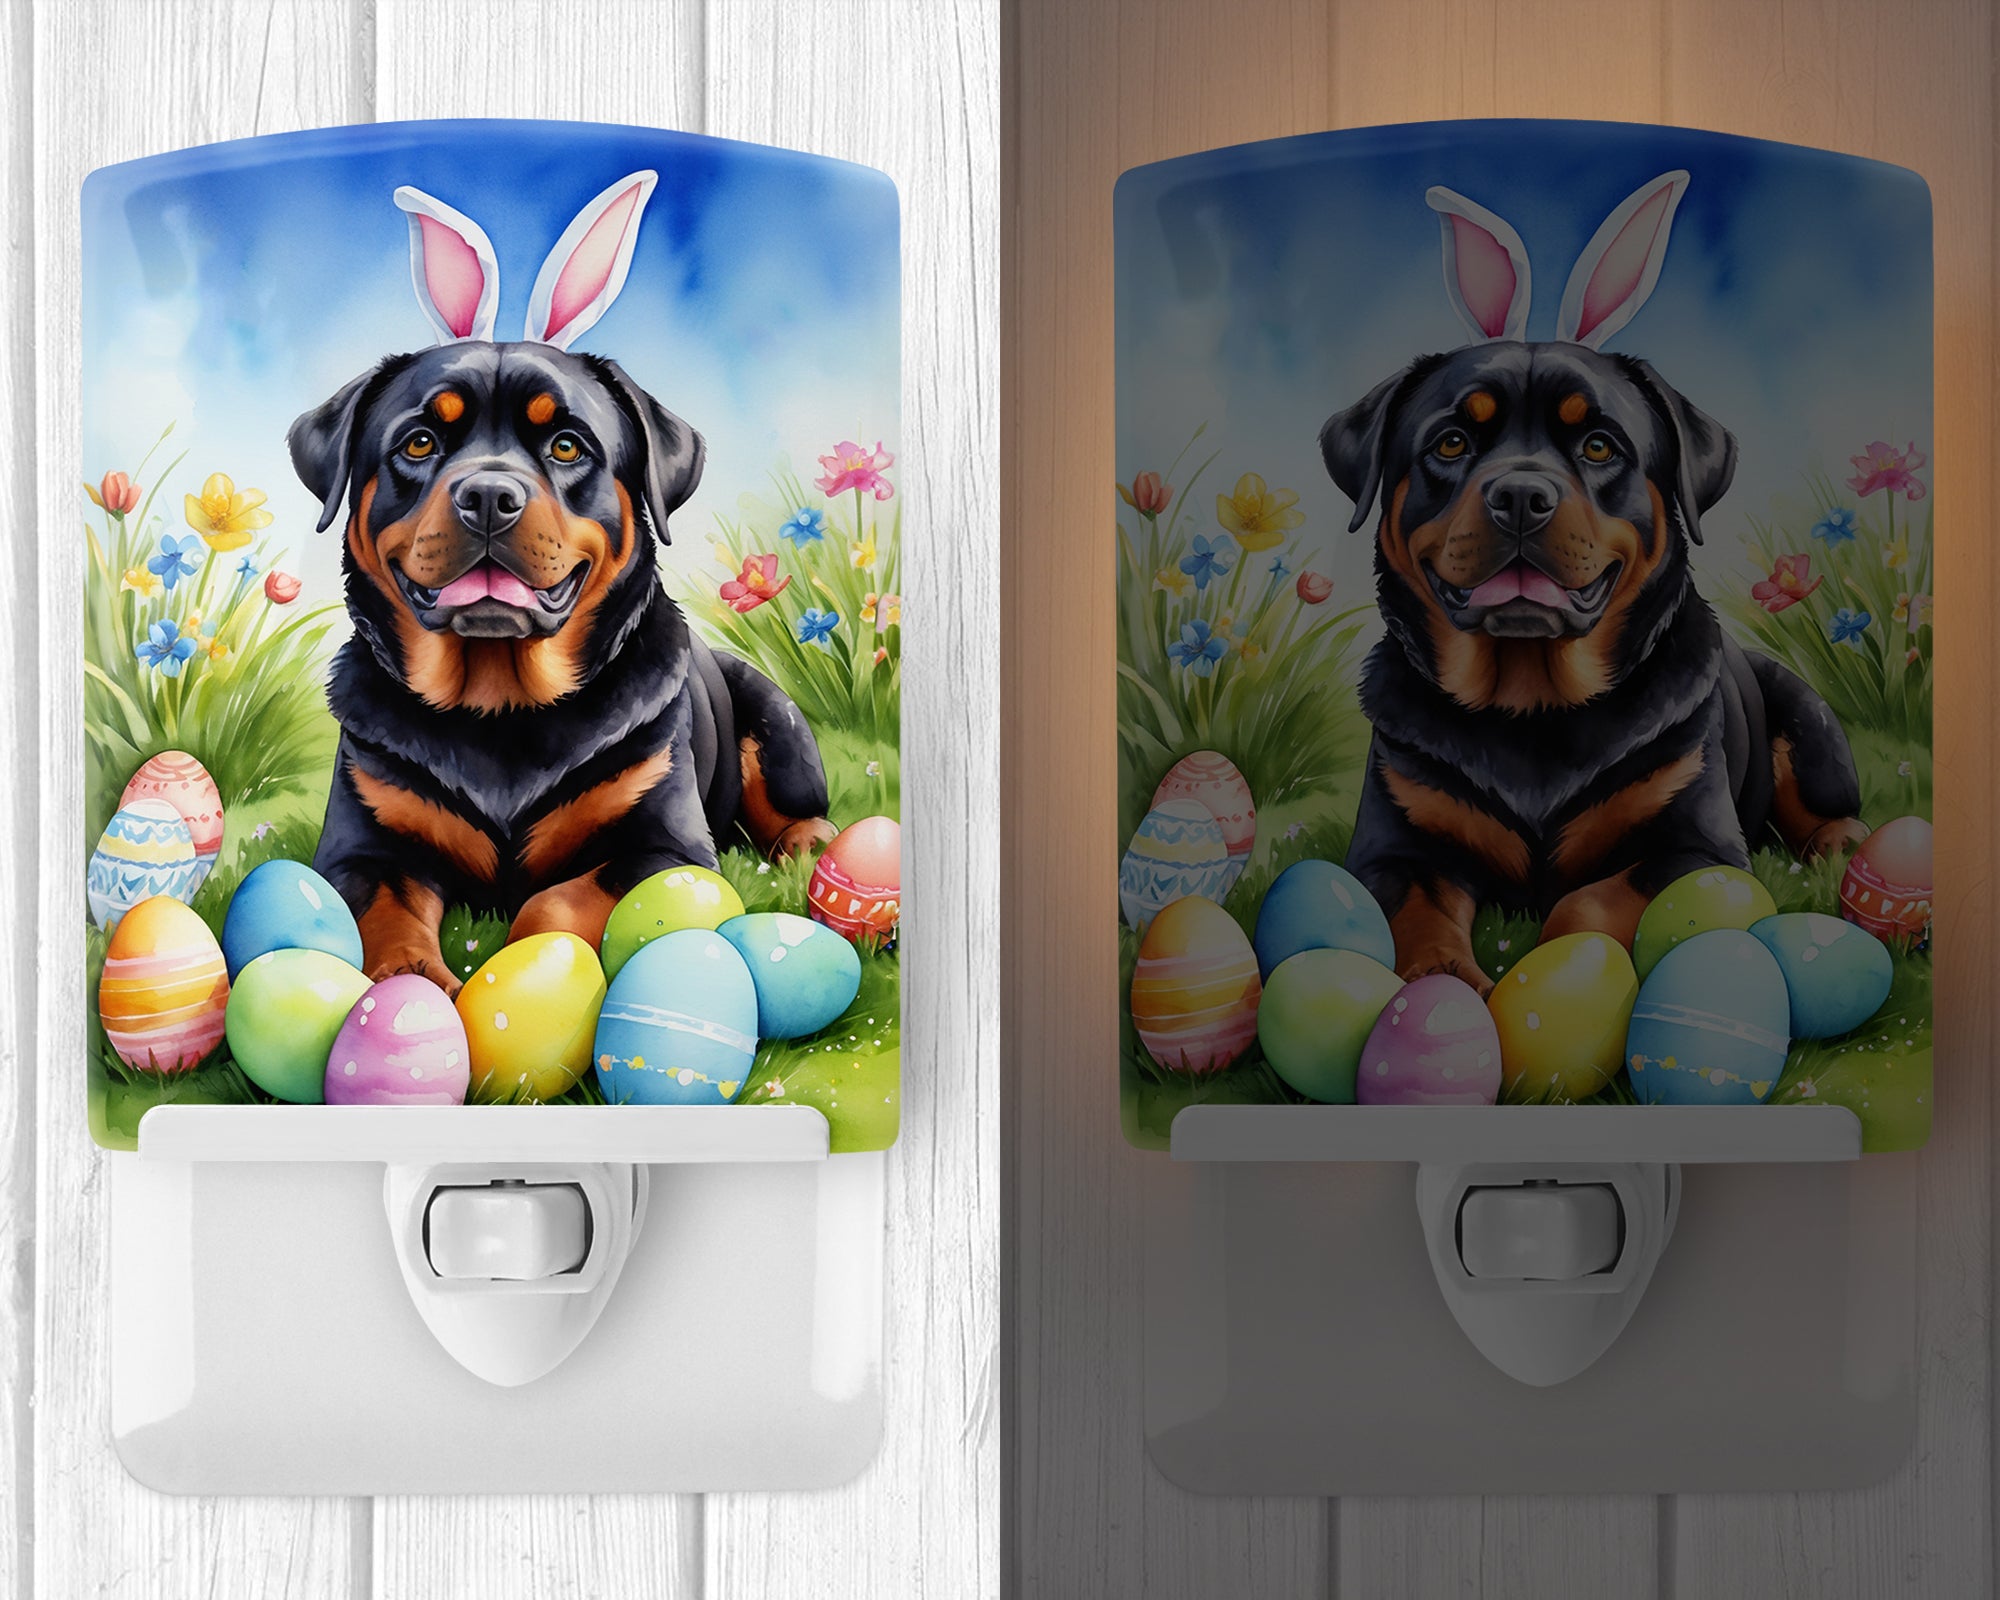 Buy this Rottweiler Easter Egg Hunt Ceramic Night Light